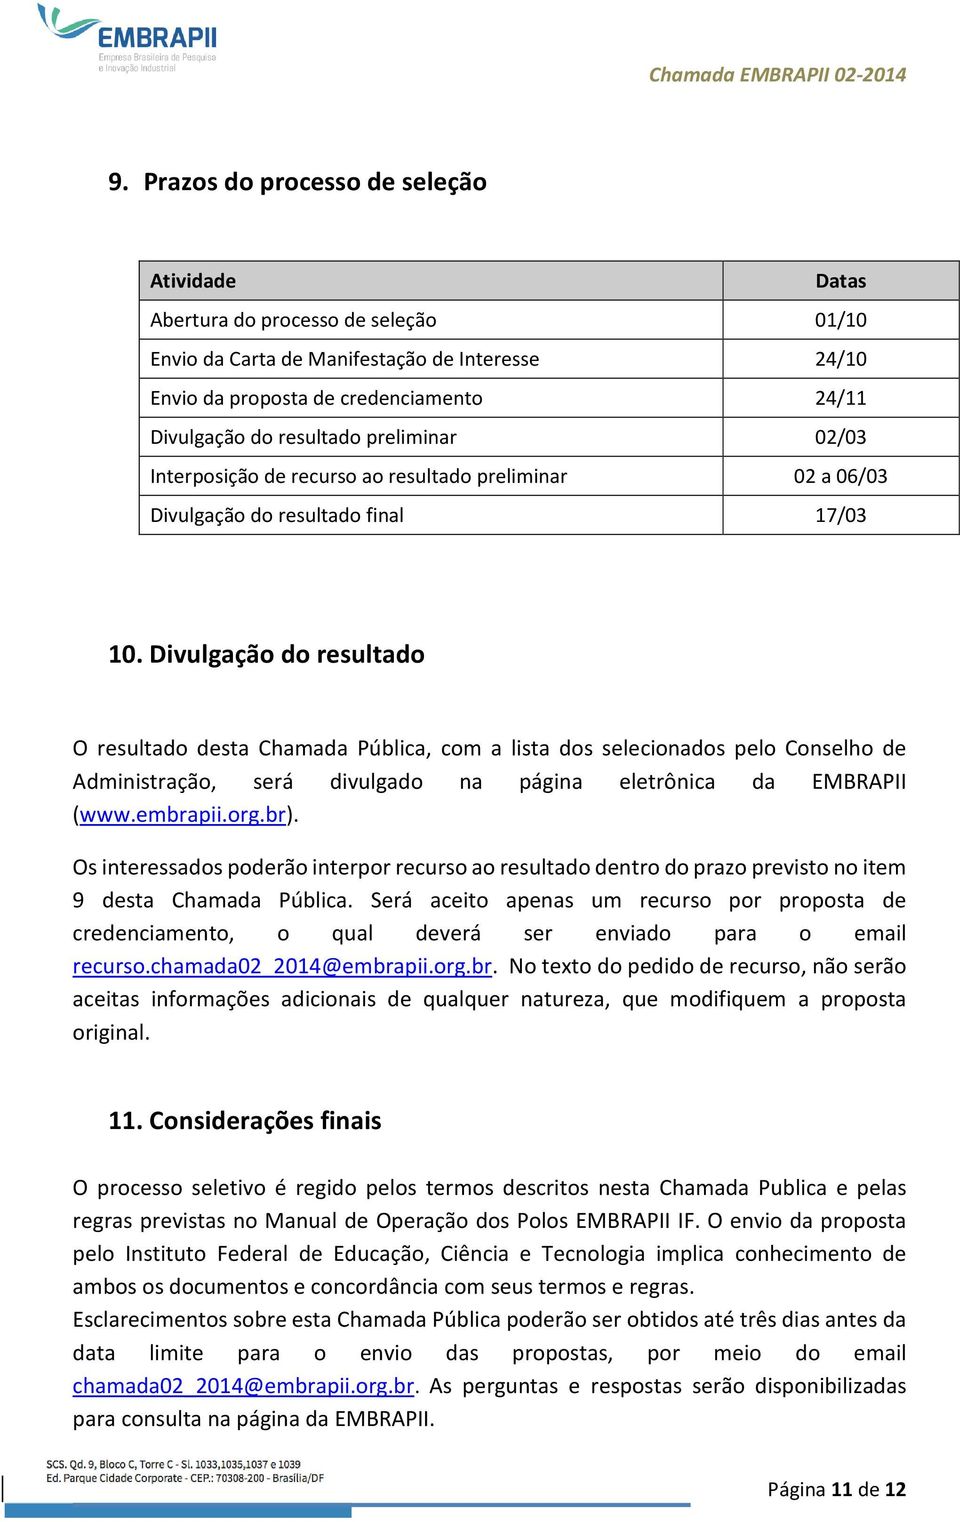 Divulgação do resultado O resultado desta Chamada Pública, com a lista dos selecionados pelo Conselho de Administração, será divulgado na página eletrônica da EMBRAPII (www.embrapii.org.br).